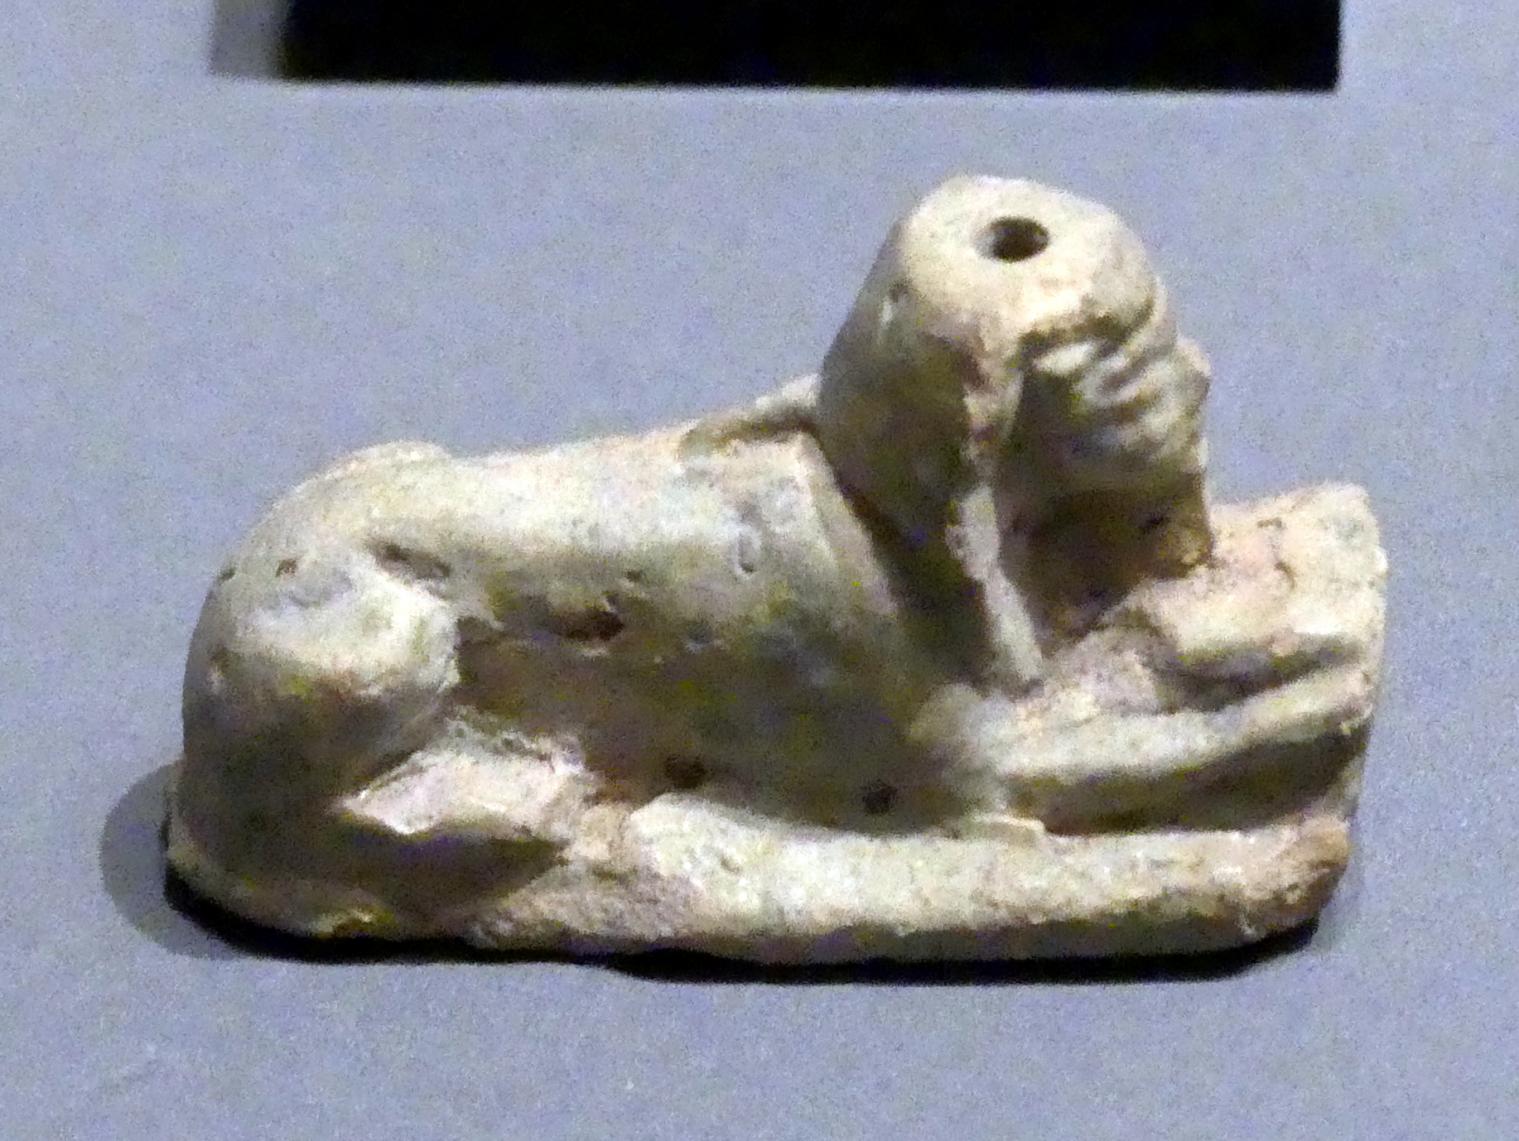 Sphinxfigur mit menschlichen Armen, Erscheinungsform des Königs, 18. Dynastie, Undatiert, 1500 - 1450 v. Chr., Bild 1/3